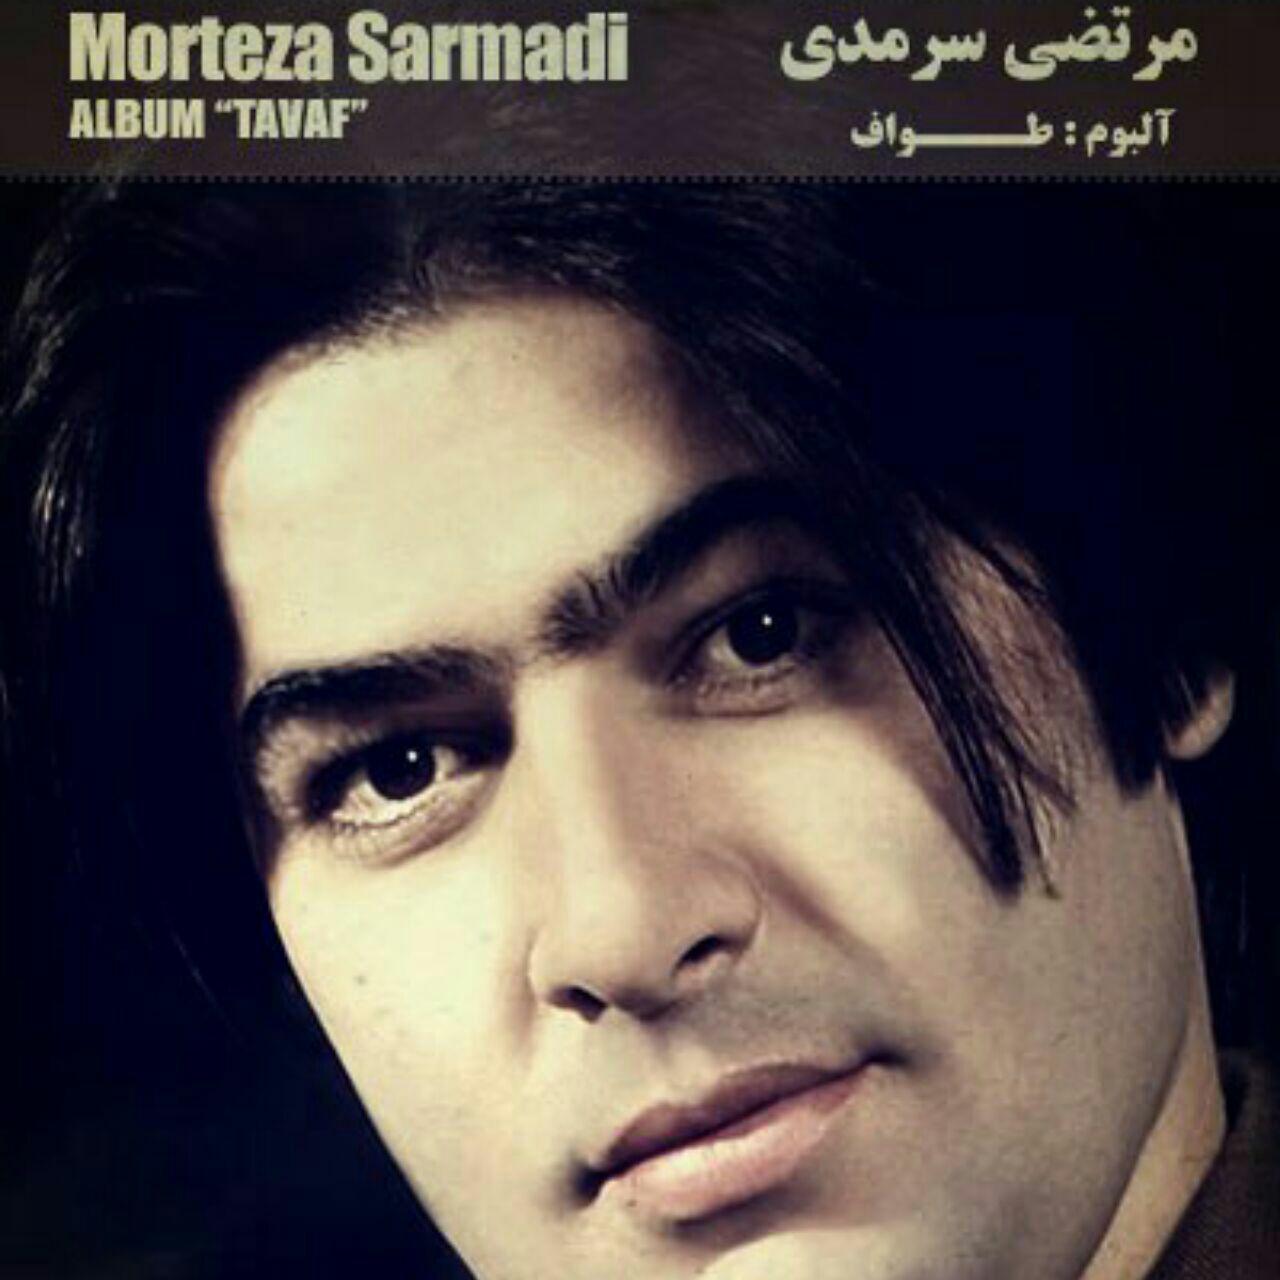  دانلود آهنگ جدید مرتضی سرمدی - یاتما بنسیز | Download New Music By Morteza Sarmadi - Yatma Bensiz